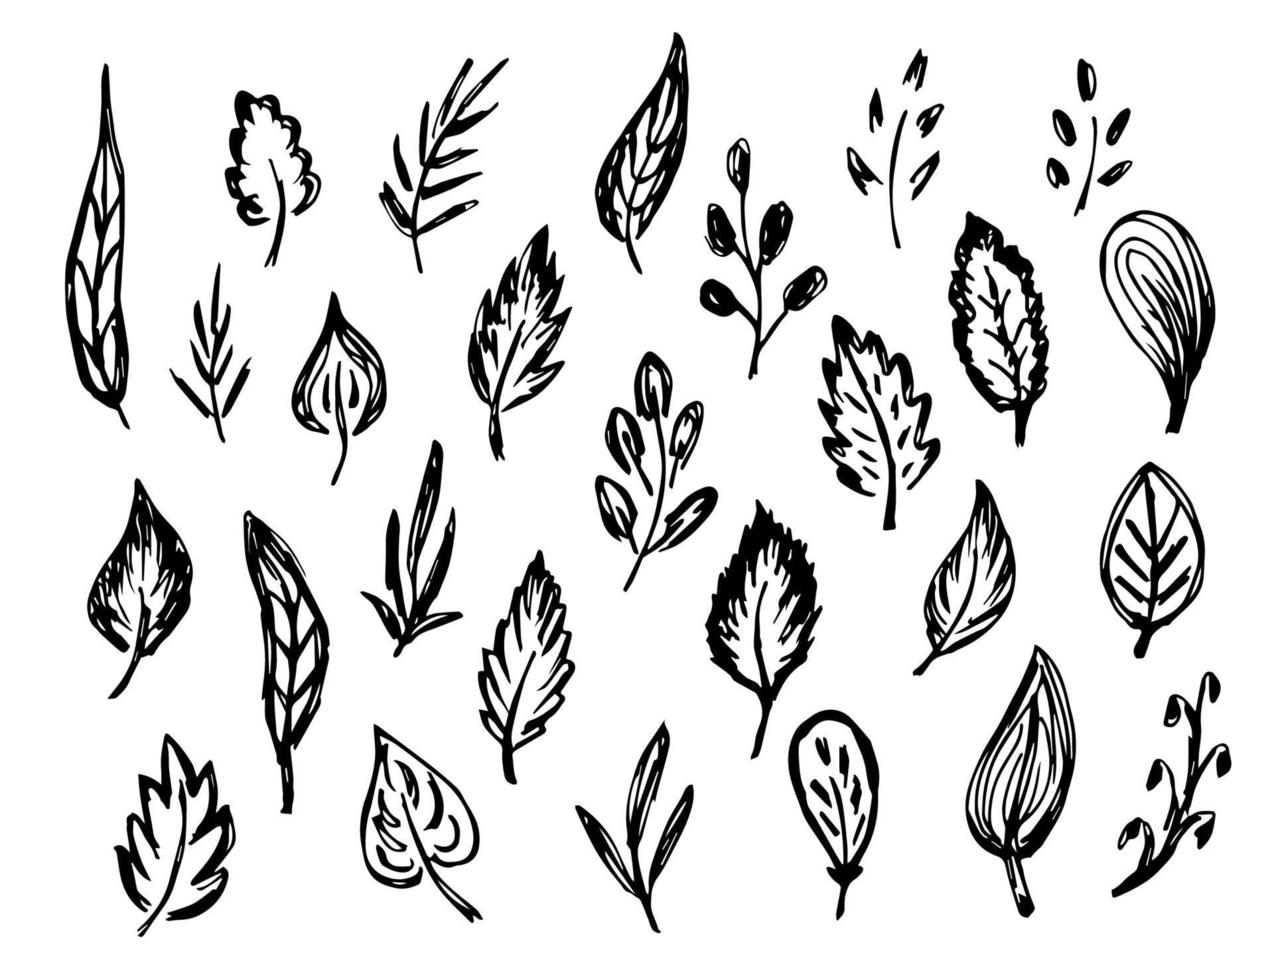 insieme di doodle di vettore in bianco e nero impreciso a mano libera. foglie, ramo, ramoscello, fogliame. elementi della natura per creare modelli, design. disegno a inchiostro.